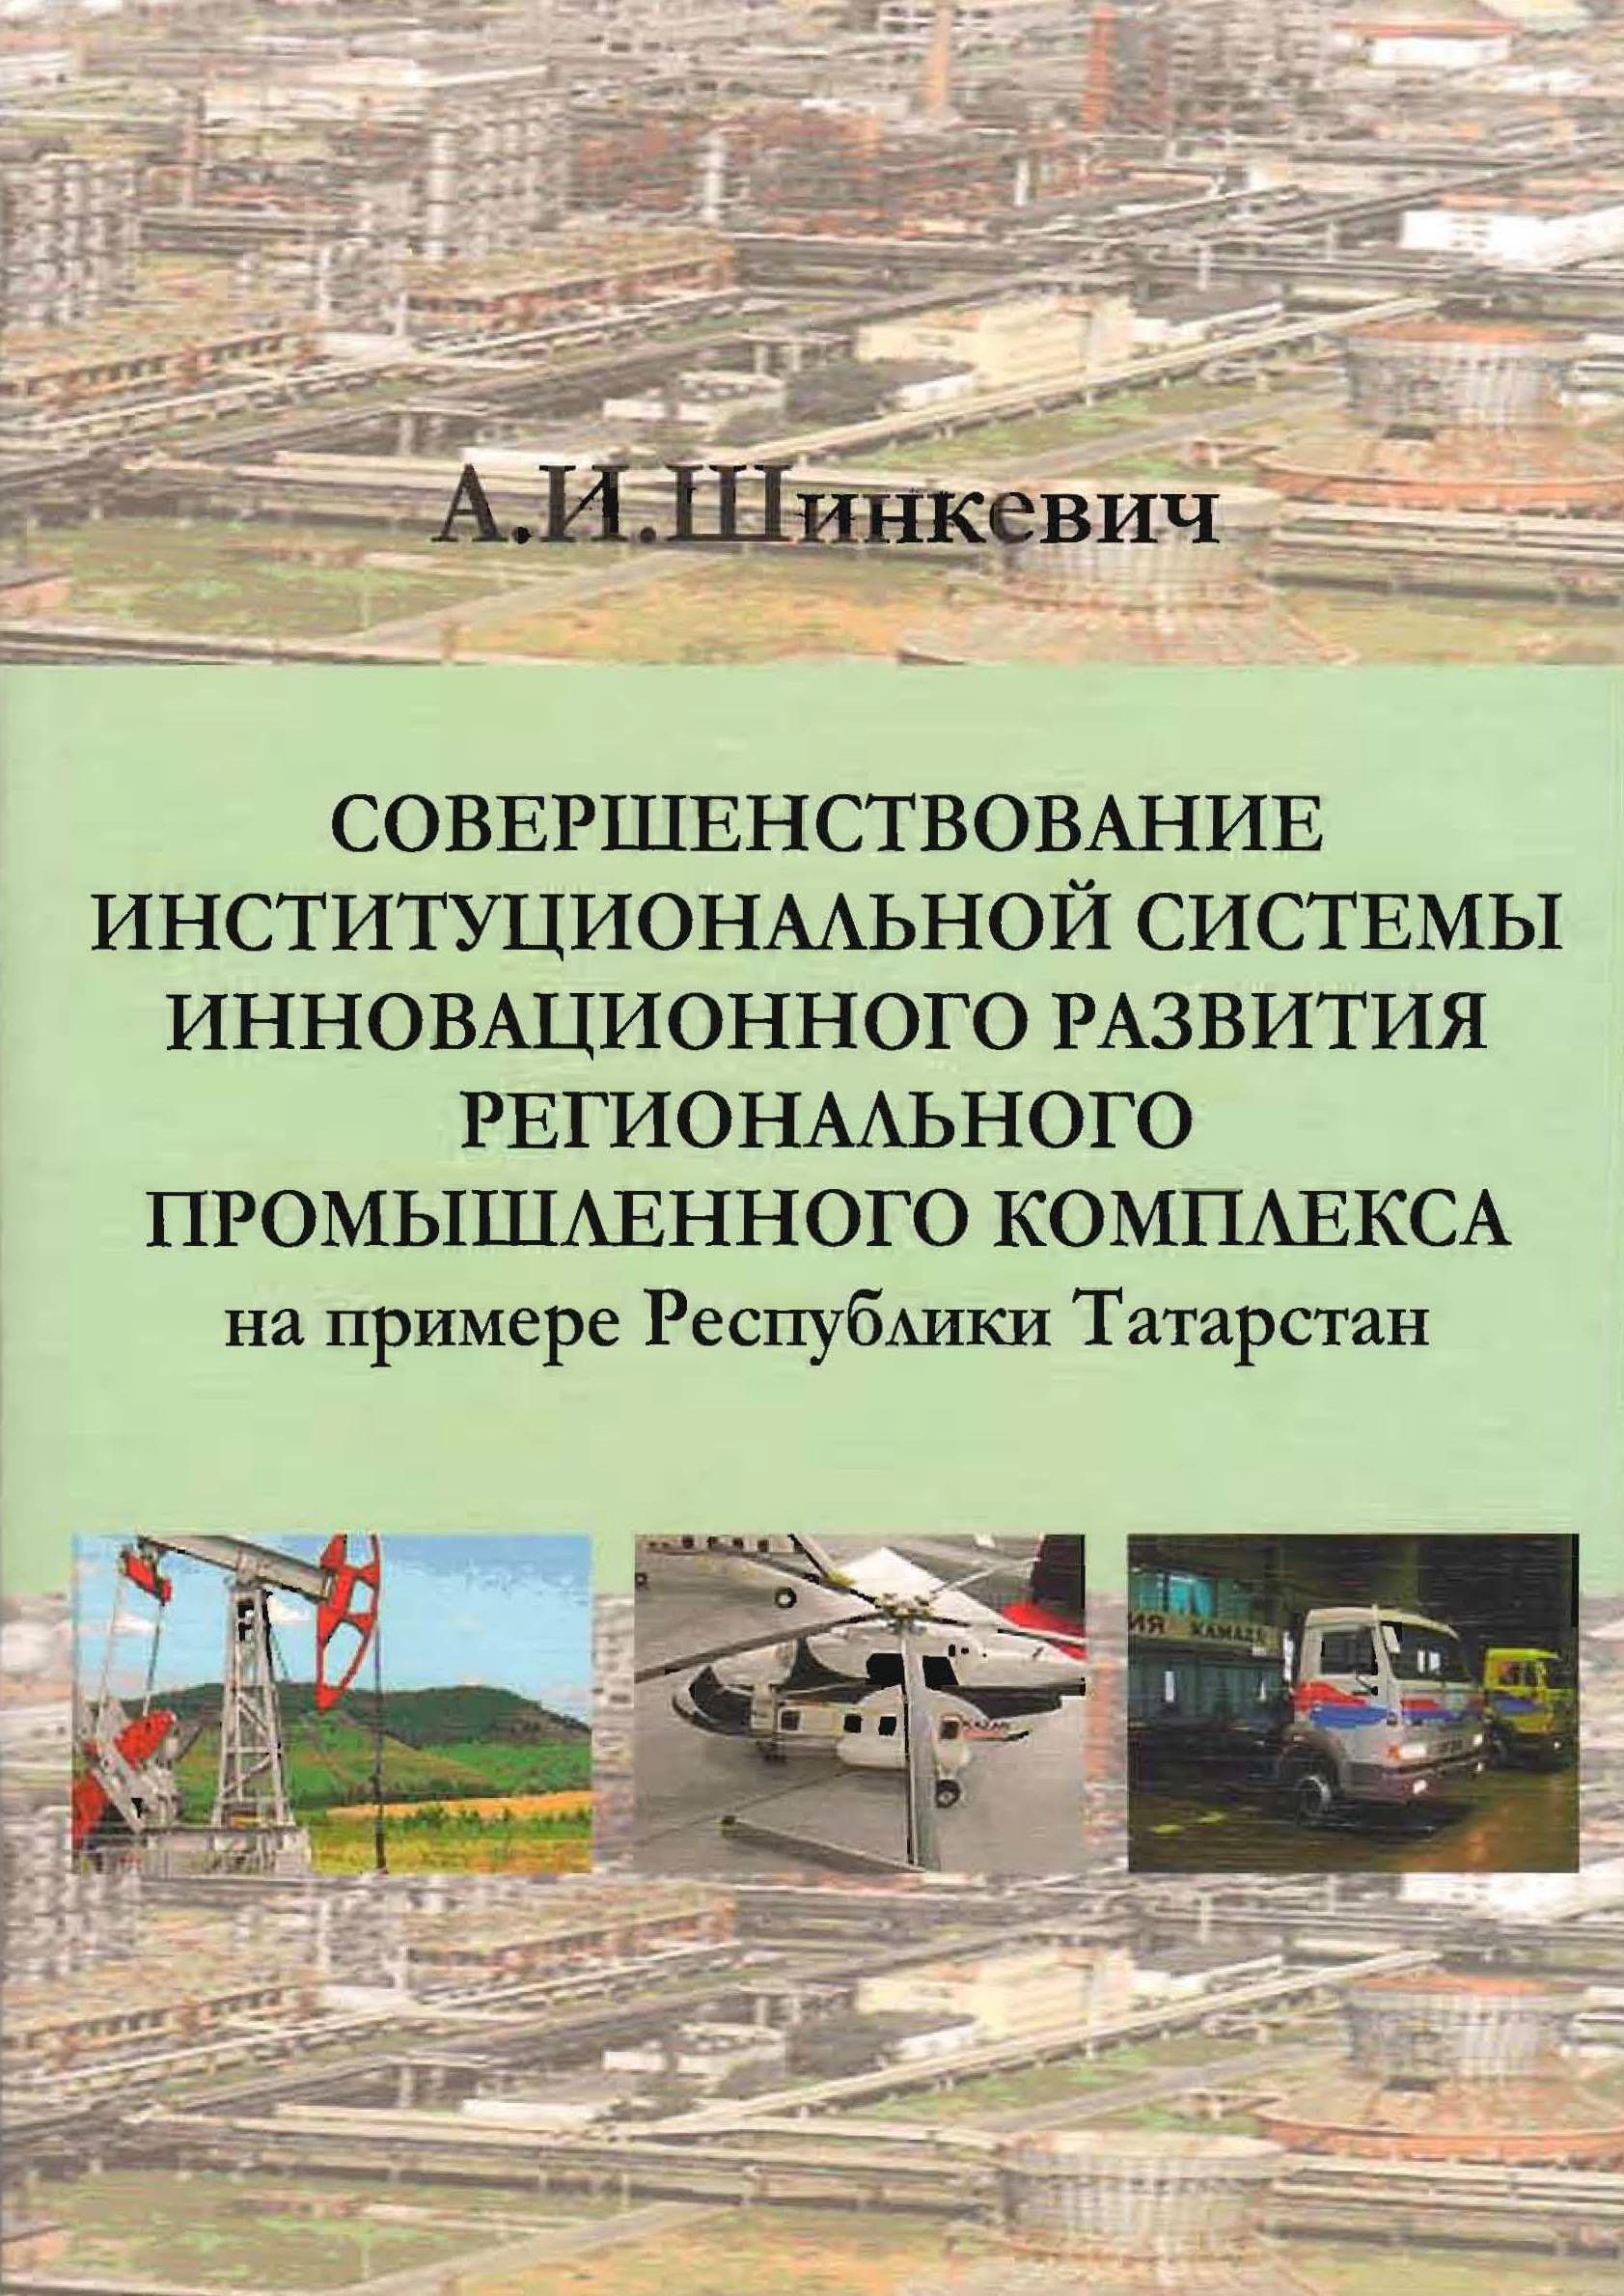 Совершенствование институциональной системы инновационного развития регионального промышленного комплекса (на примере Республики Татарстан)